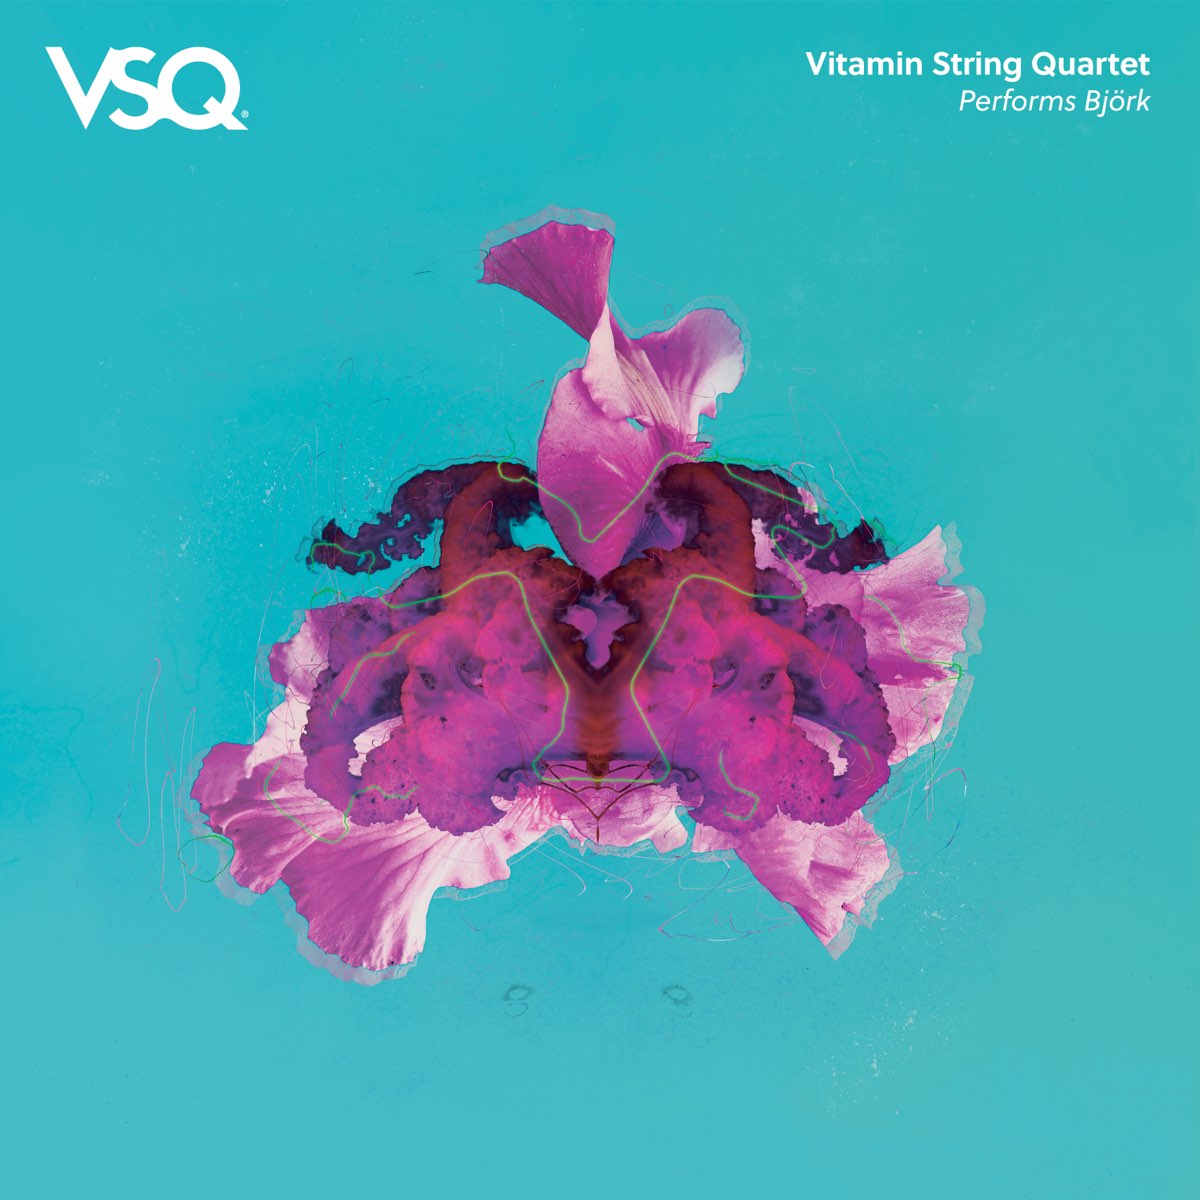 Vitamin quartet. Vitamin String Quartet альбомы. Vitamin String Quartet. Vitamin String Quartet слушать. Дискография группы Vitamin String Quartet.